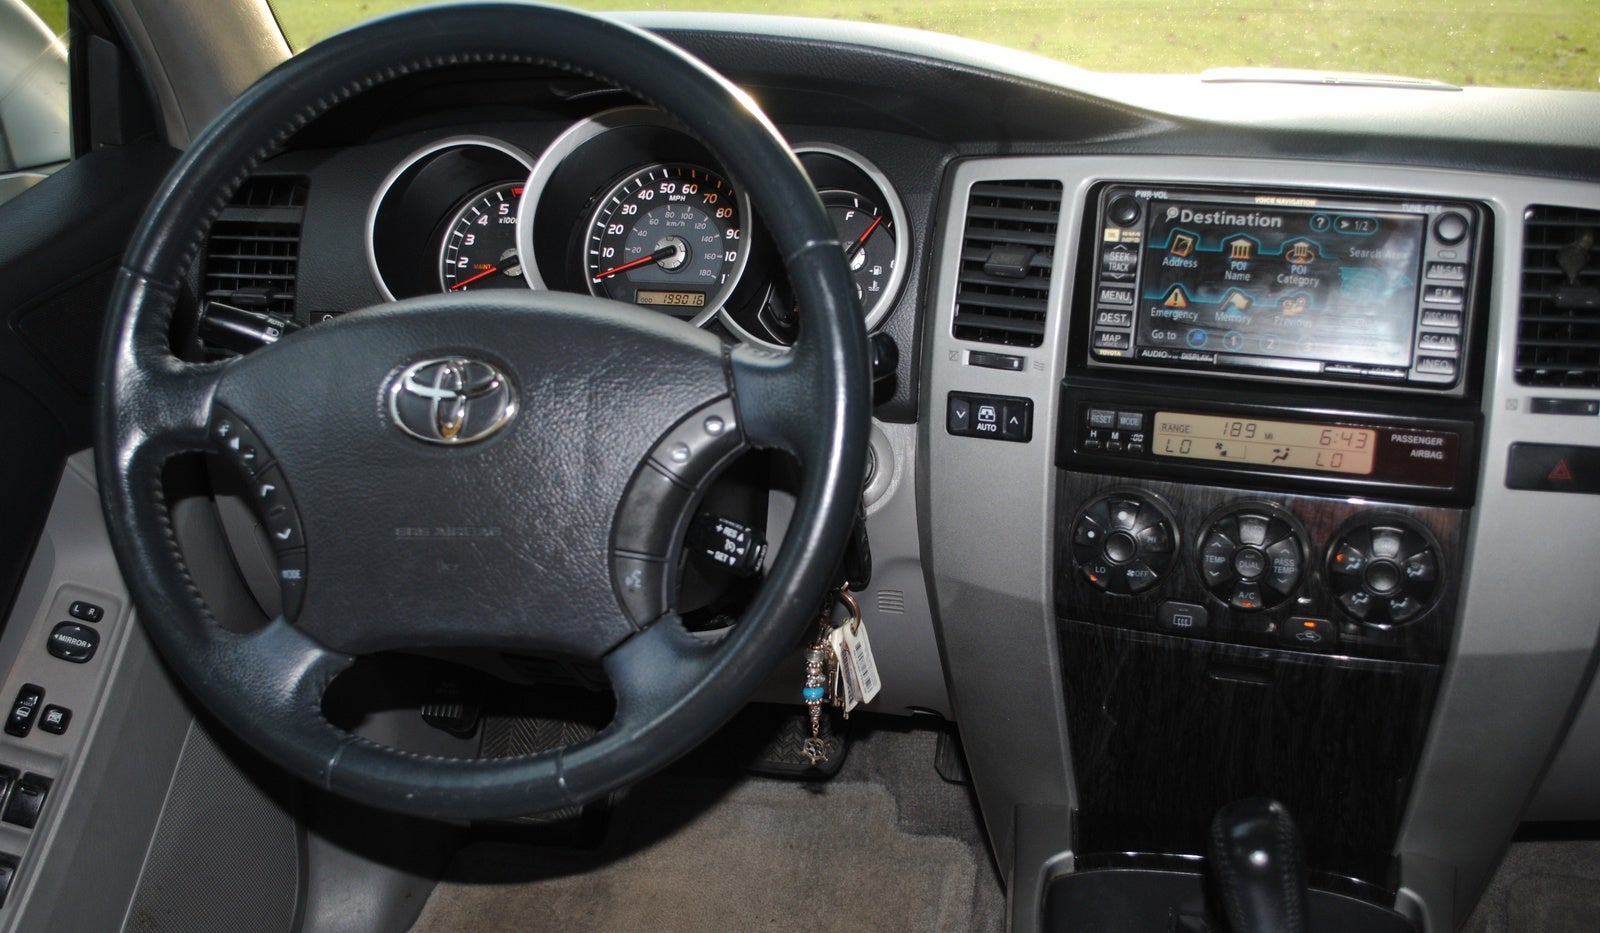 2006 Toyota 4Runner - Interior Pictures - CarGurus